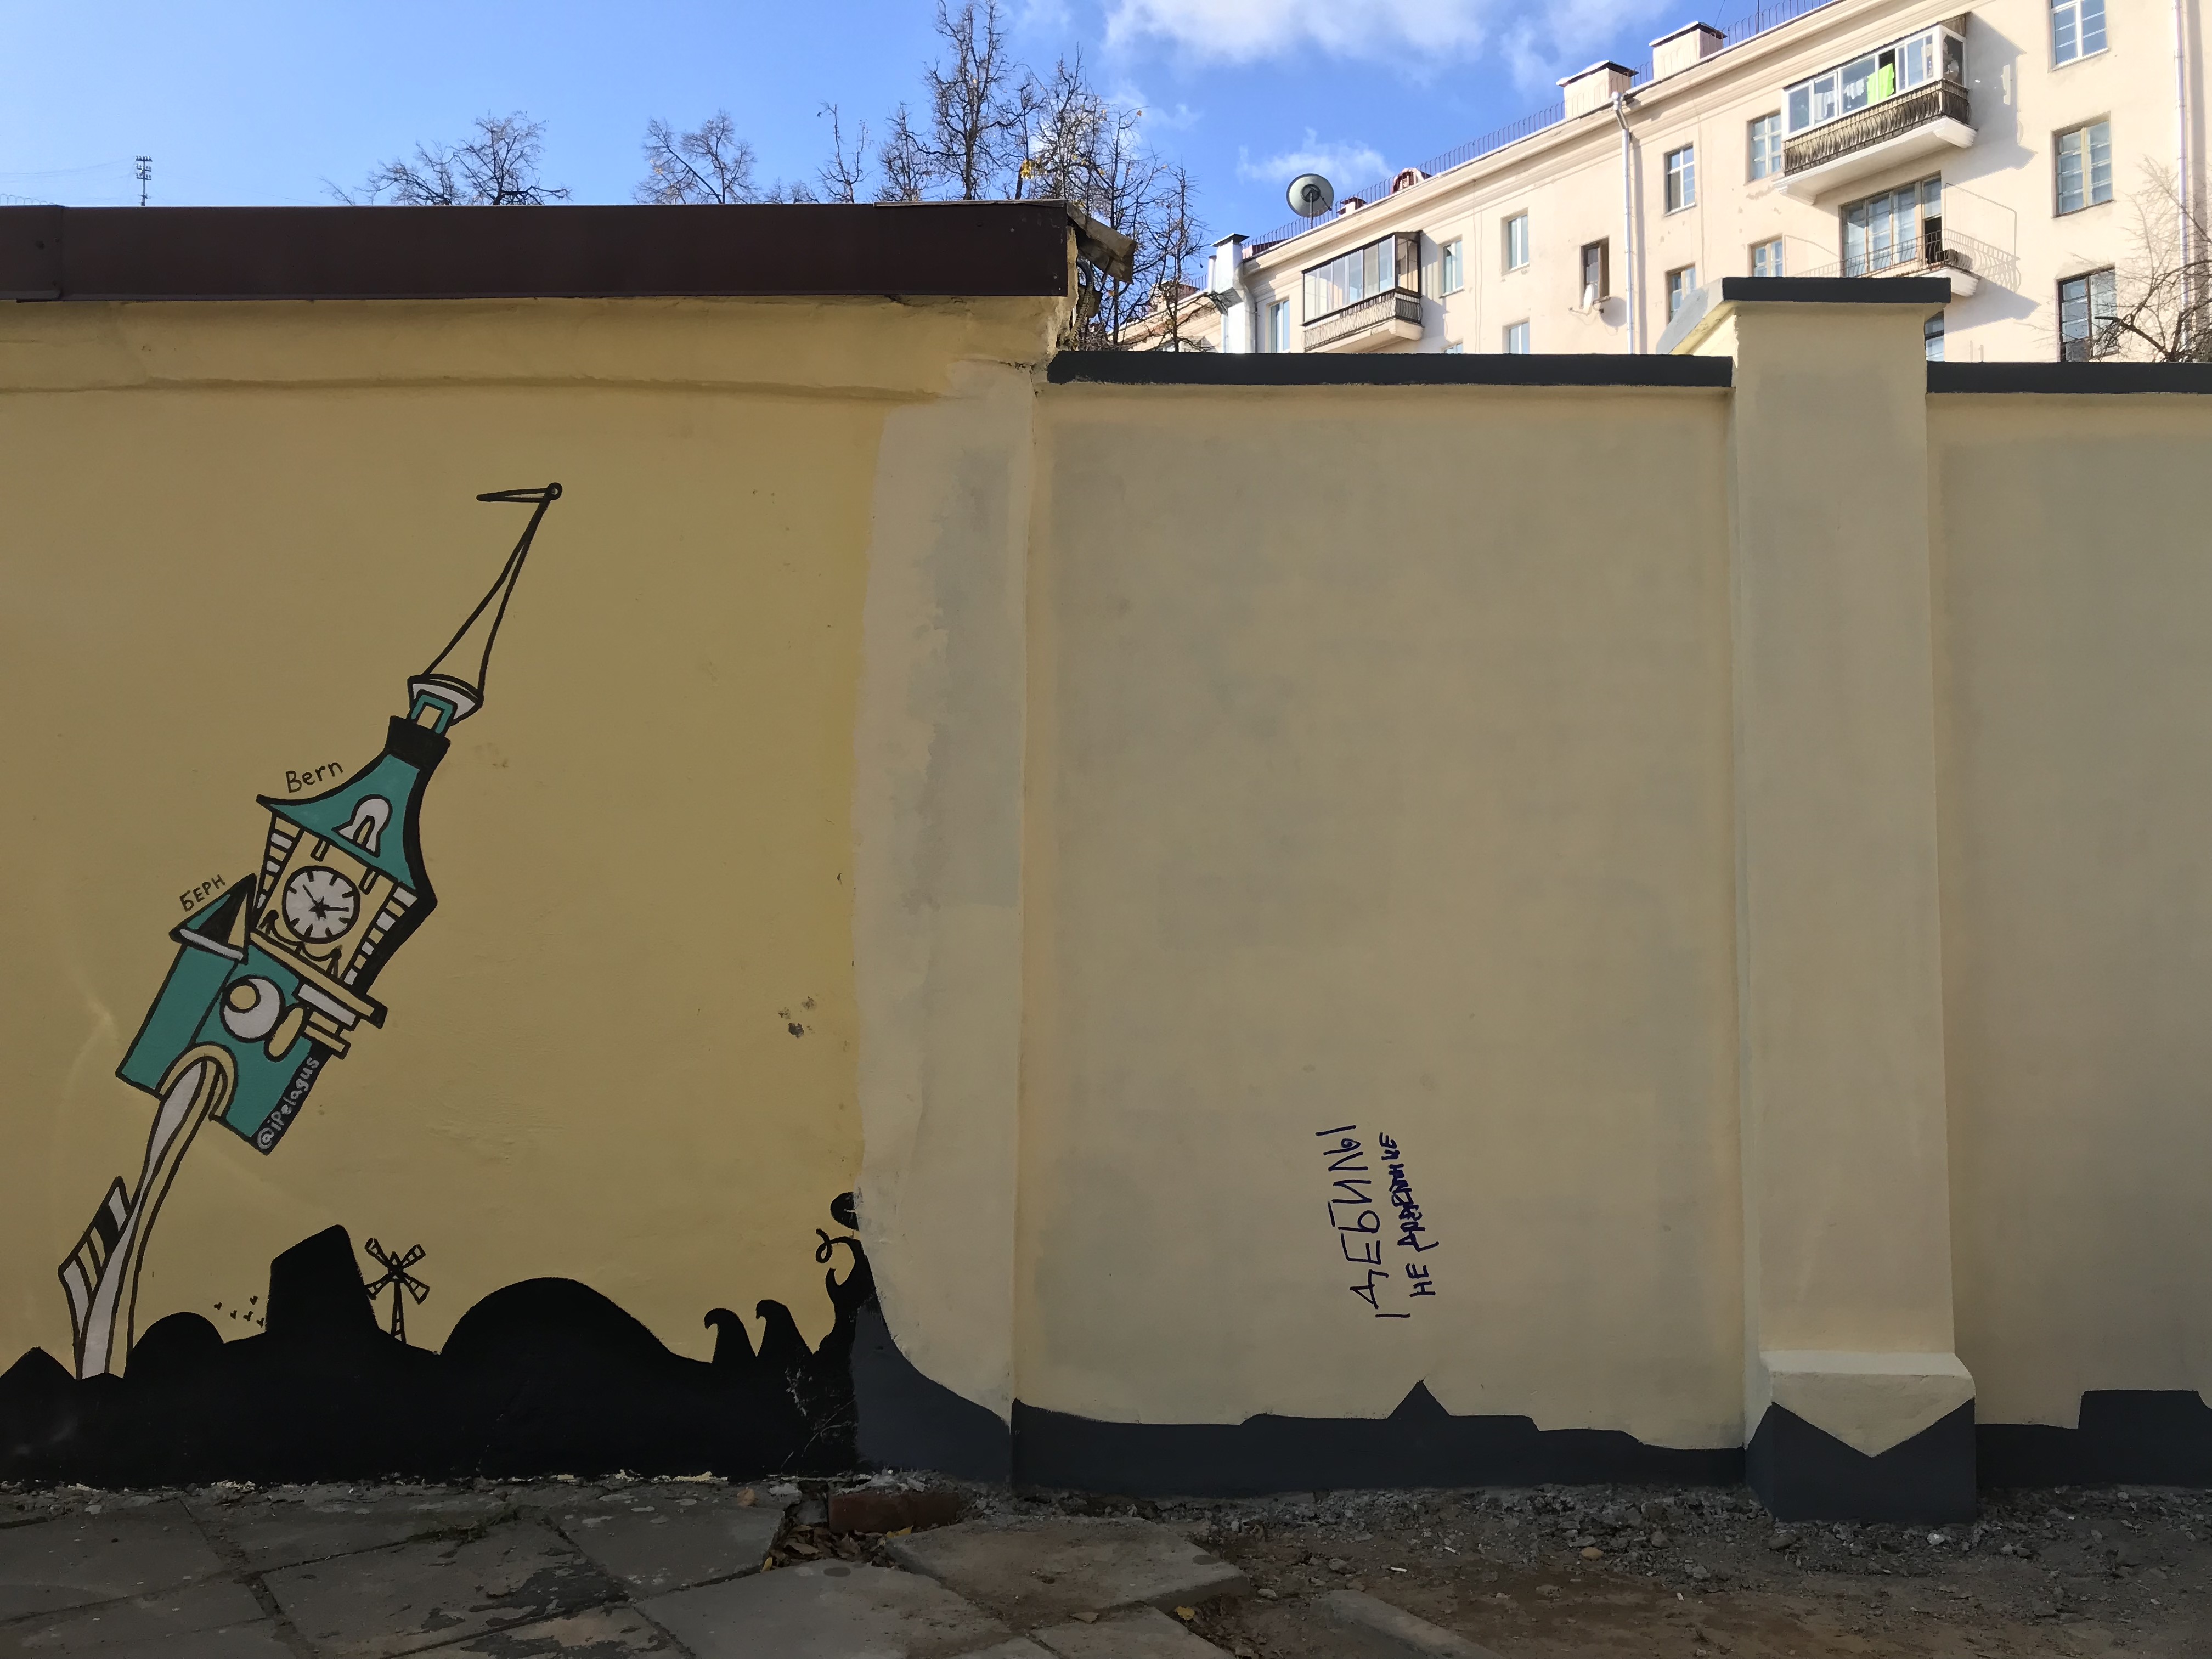 “Дебилы недоделанные”: рабочие достроили и дорисовали арт-объект в центре Минска